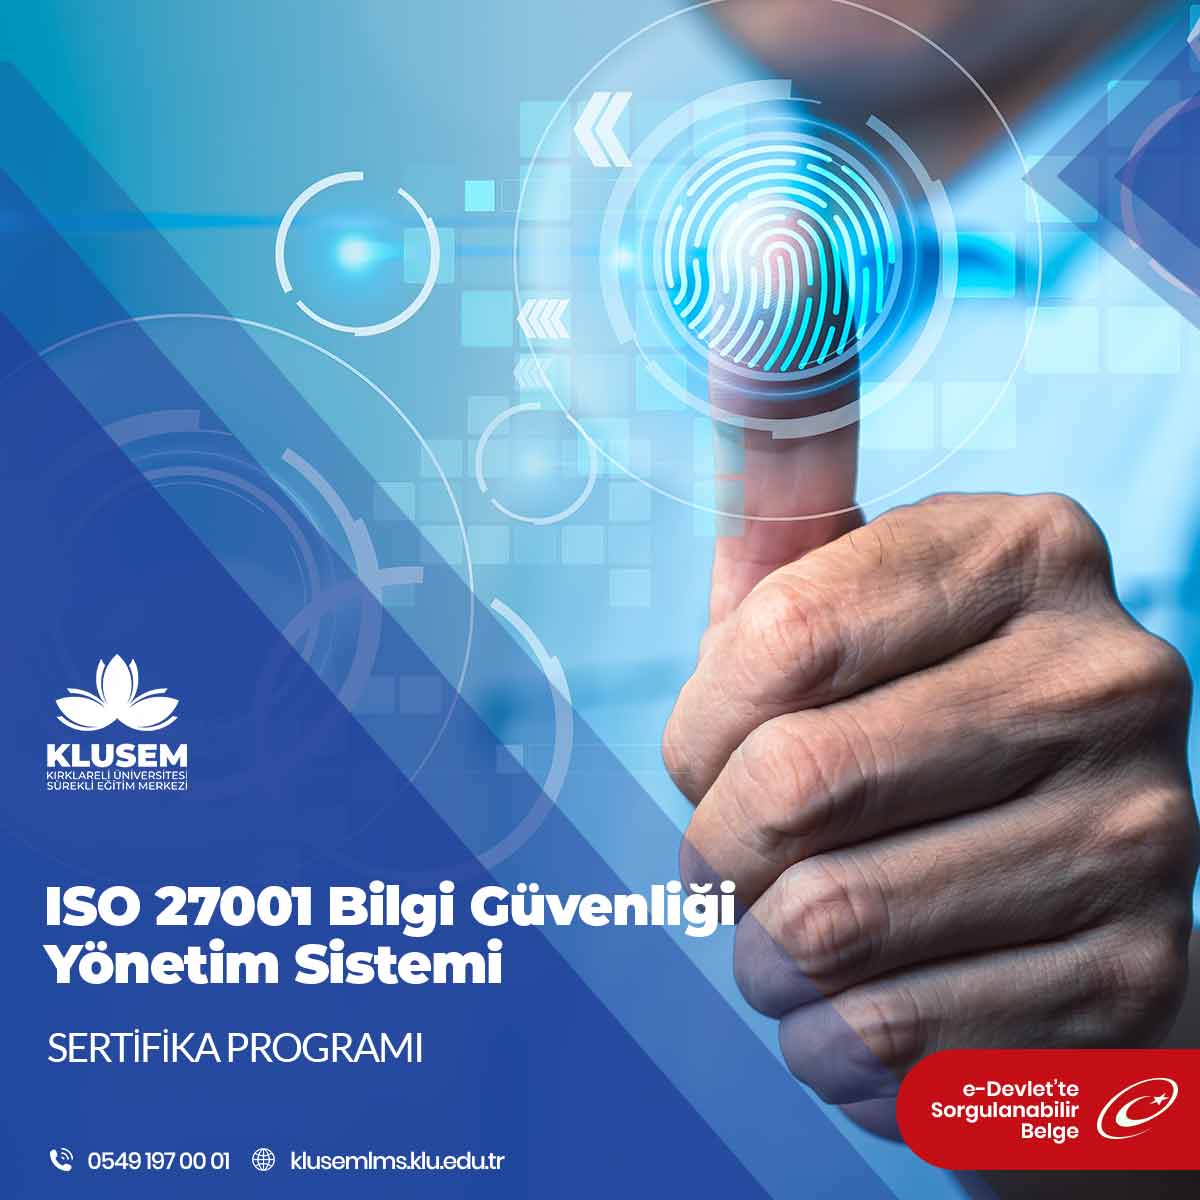 ISO 27001 Bilgi Güvenliği Yönetim Sistemi, katılımcılara bu standartı anlama, uygulama ve yönetme yetenekleri kazandırmayı hedefleyen bir eğitim programıdır.